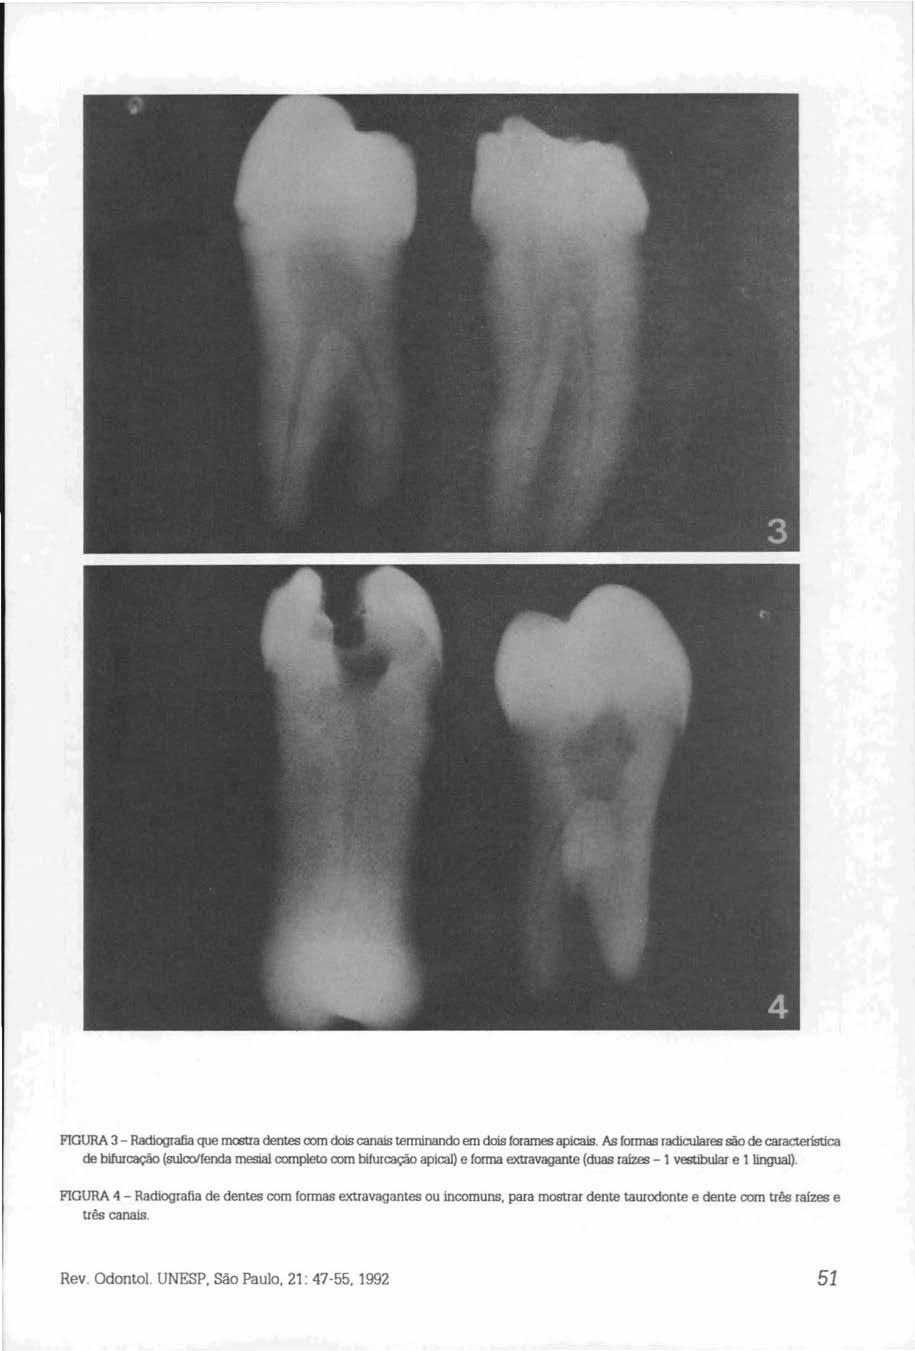 FIGURA 3 - Radiografia que mostra dentes com dois canais terminando em dois forames apicais.